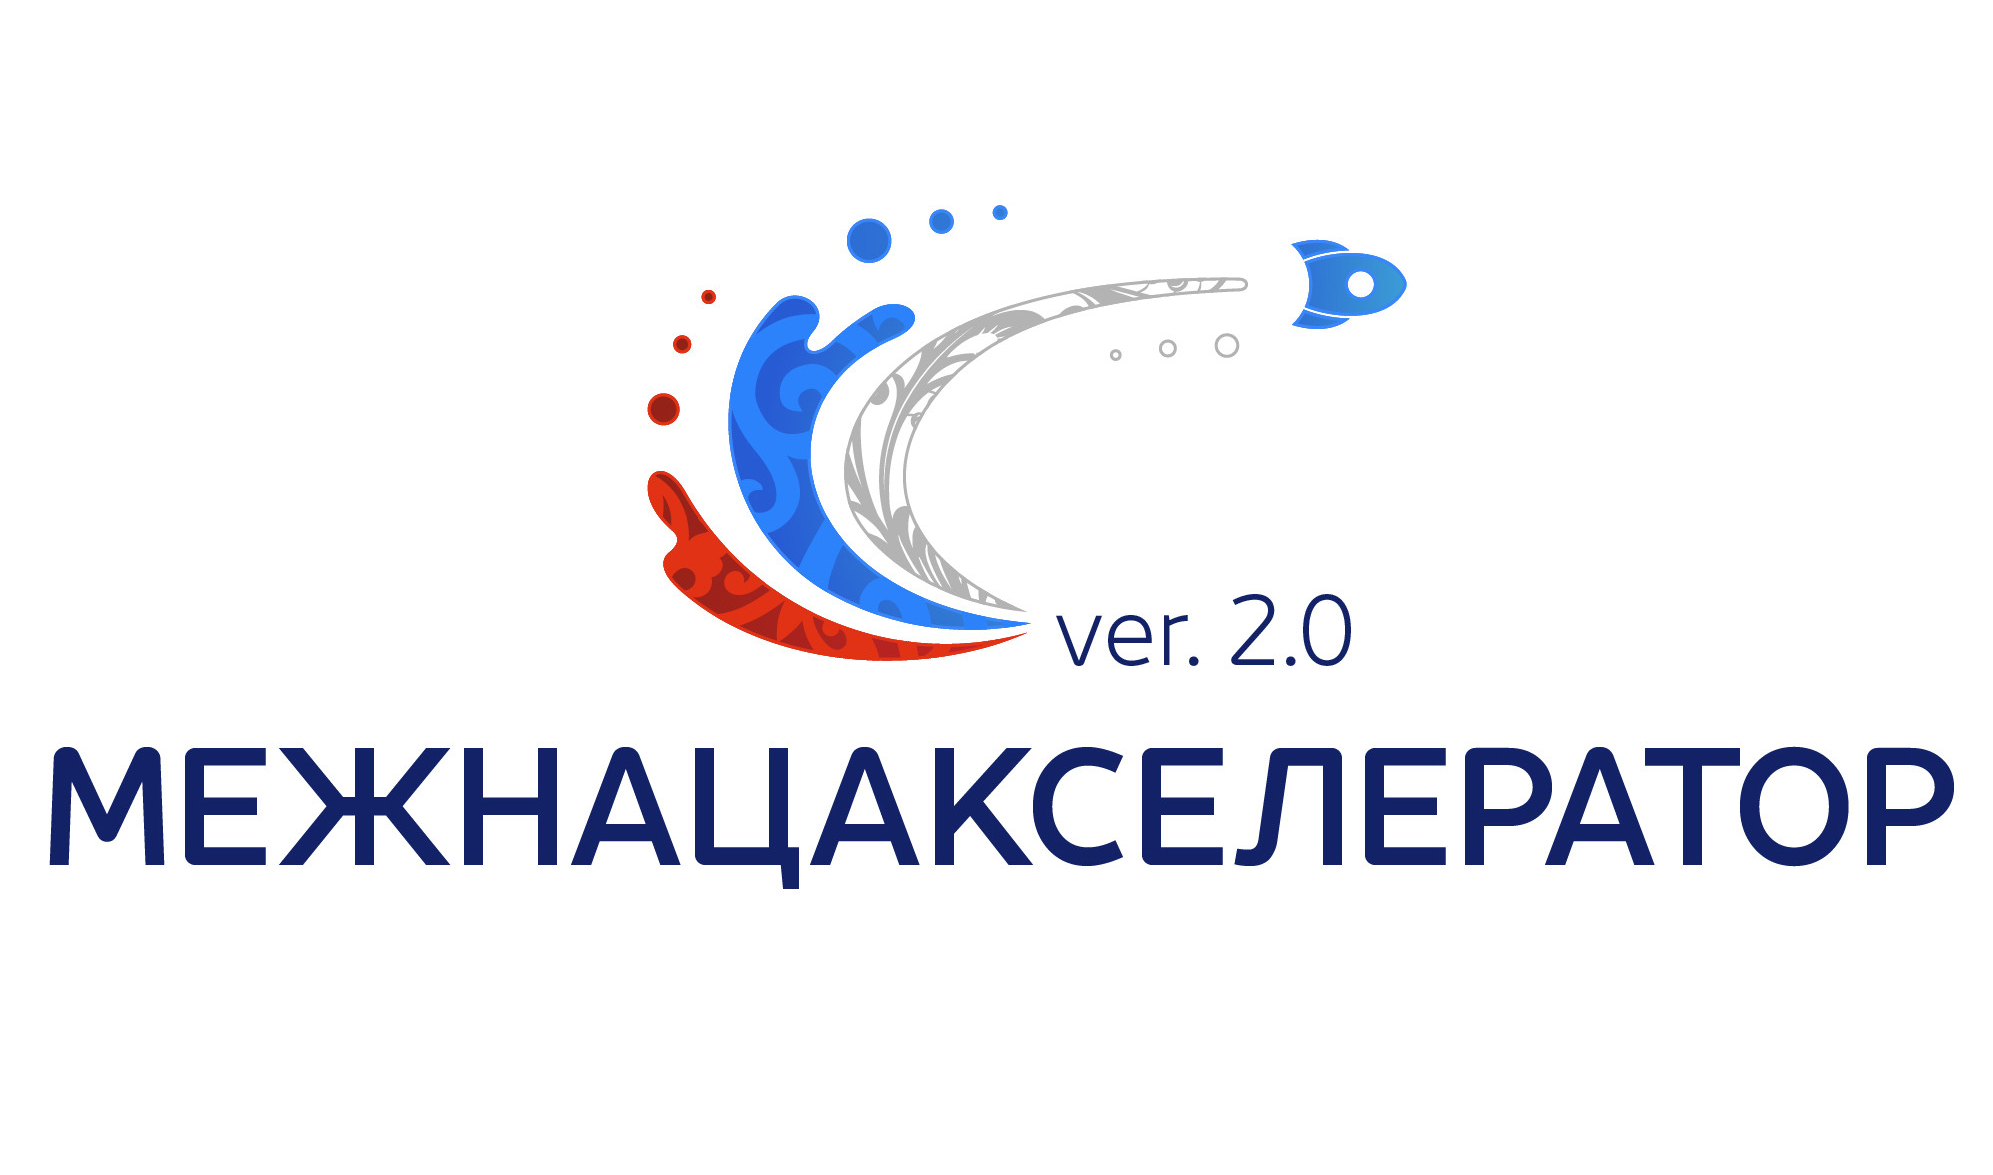 Всероссийский конкурс проектов в сфере межнациональных отношений «МежНацАкселератор 2.0»